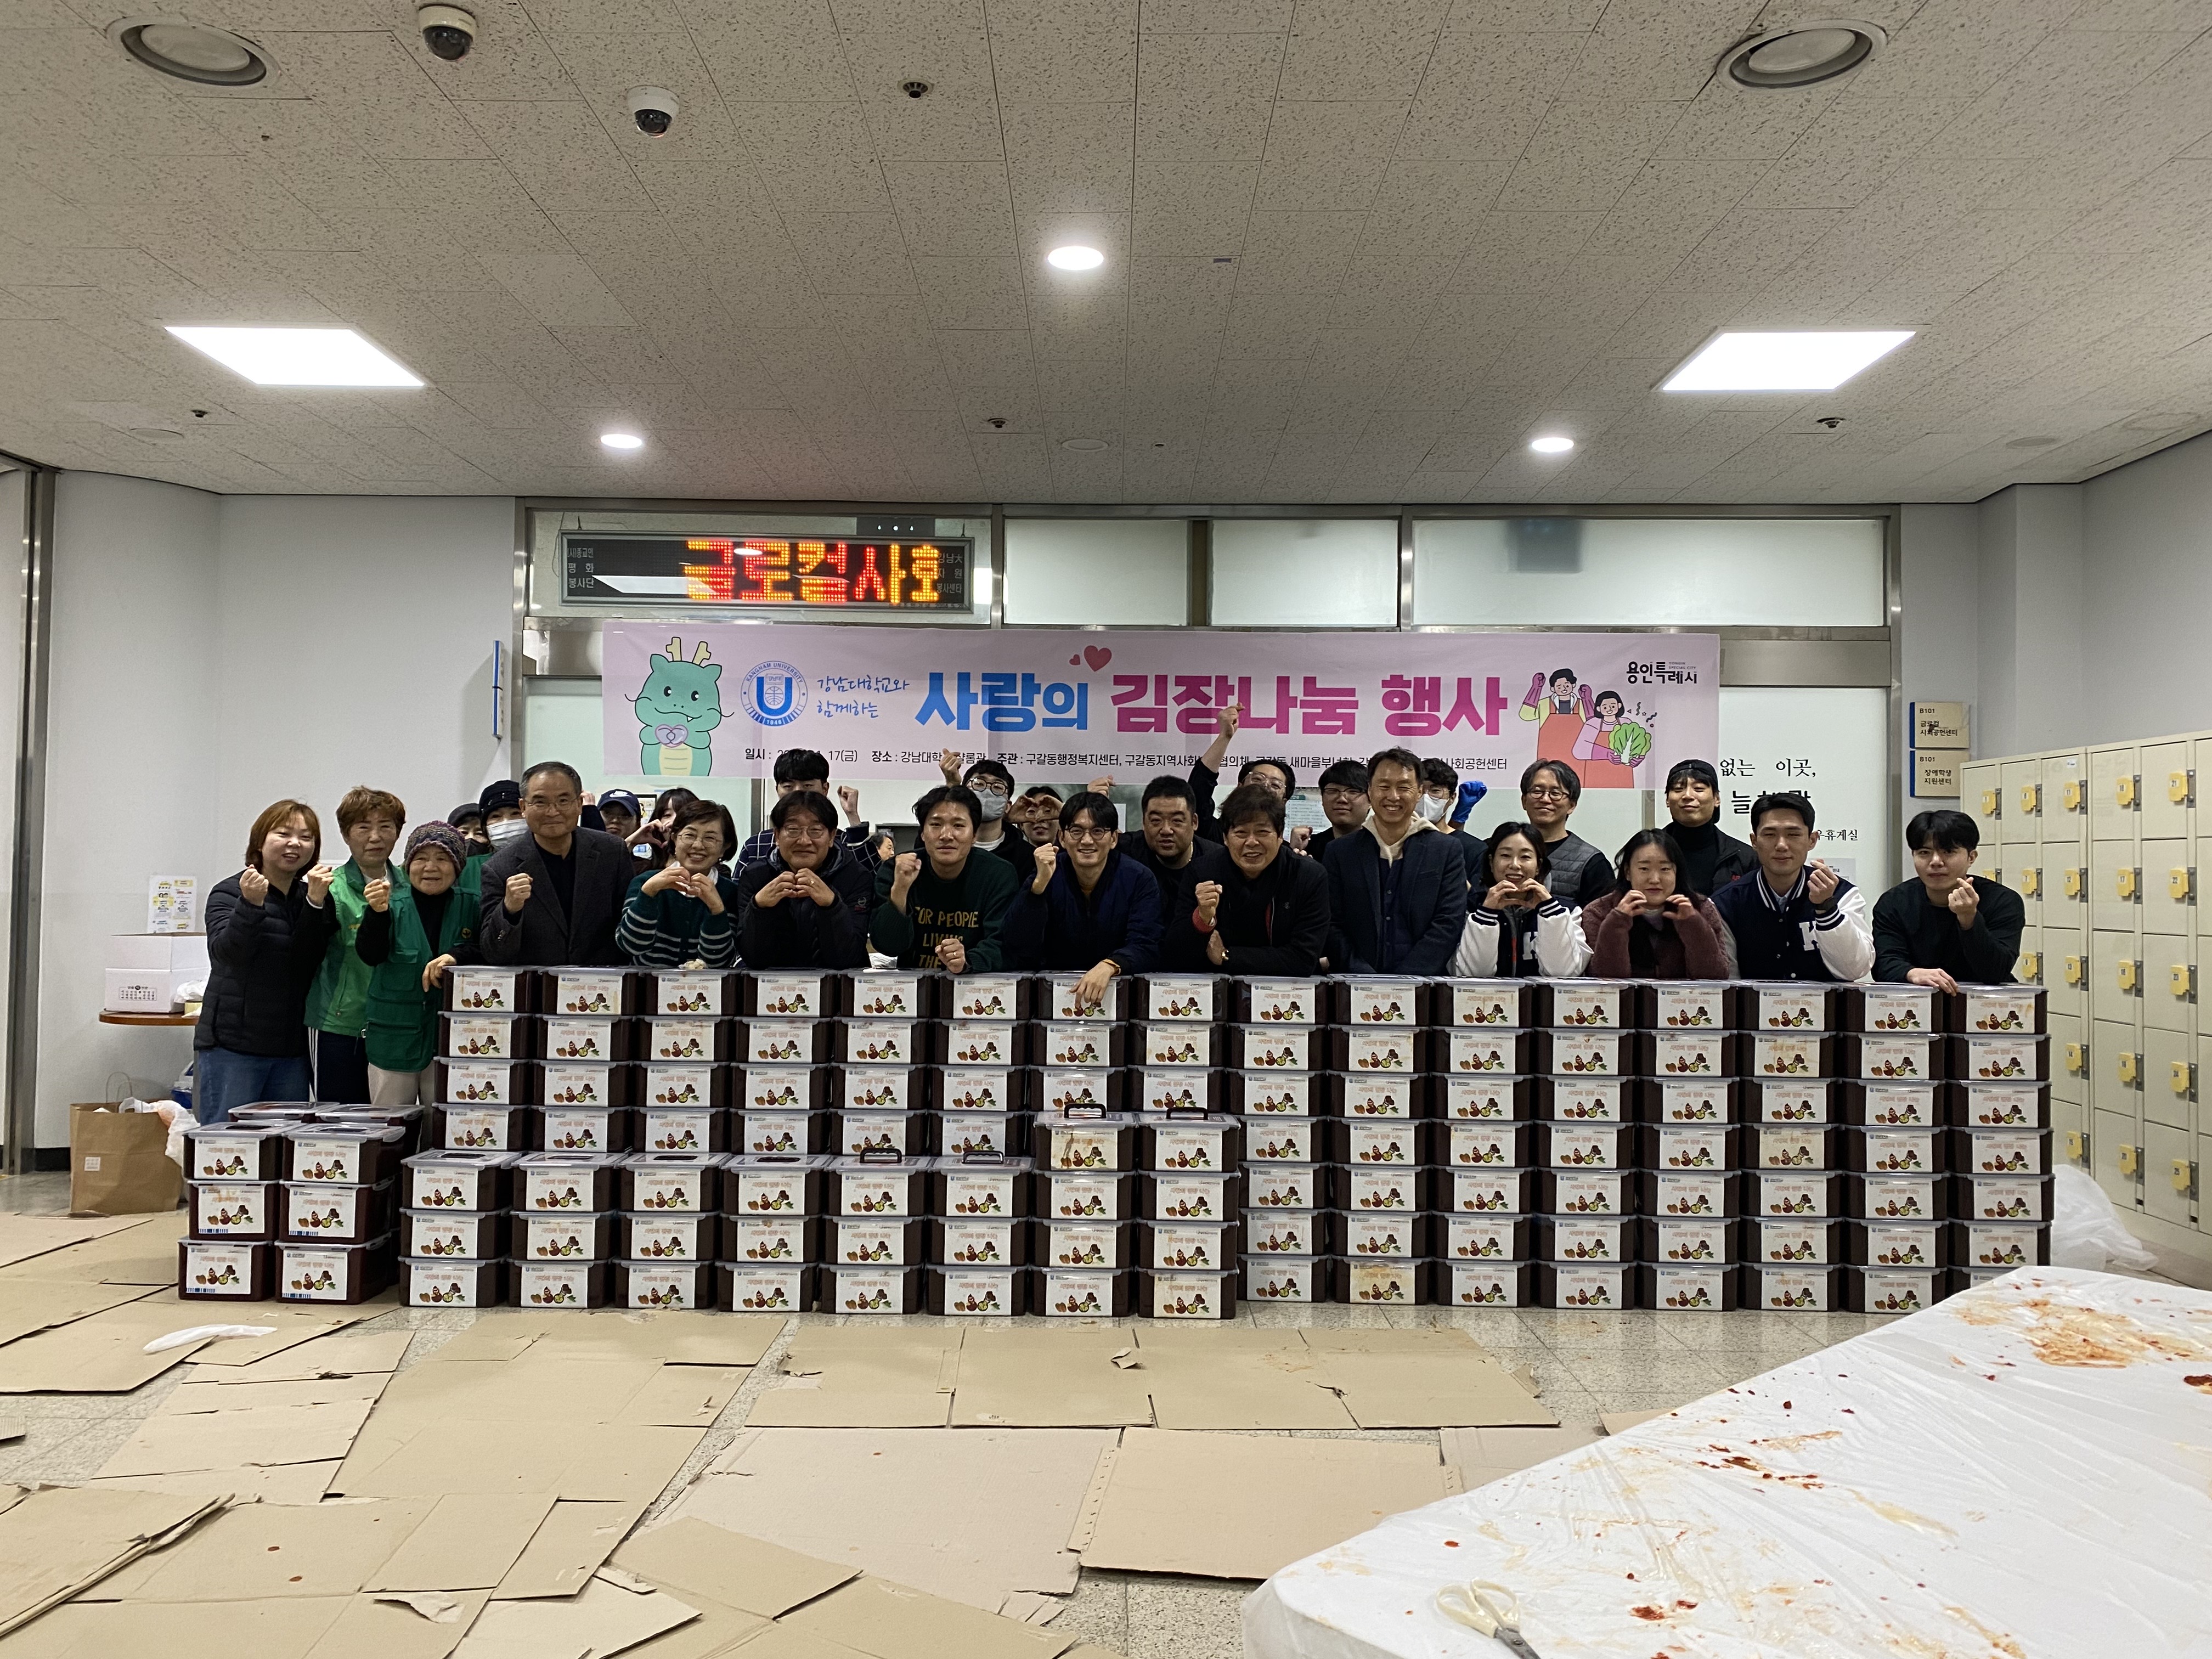 강남대학교 교직원 봉사자들 및 재학생 봉사자들의 단체 사진입니다. 